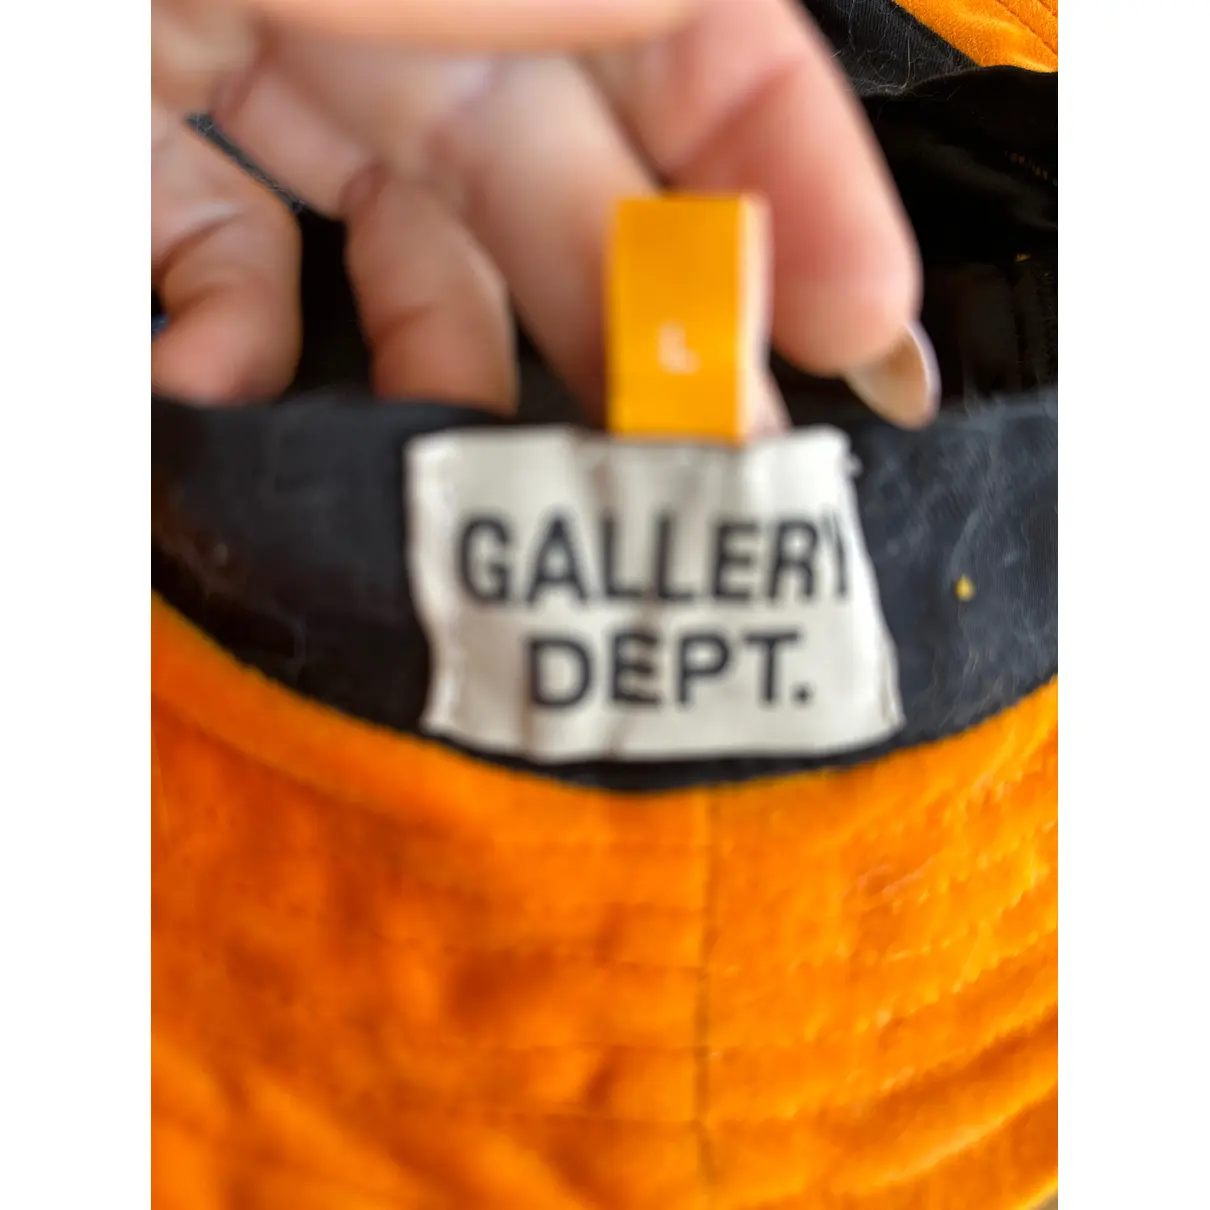 Buy Gallery Dept Cap online